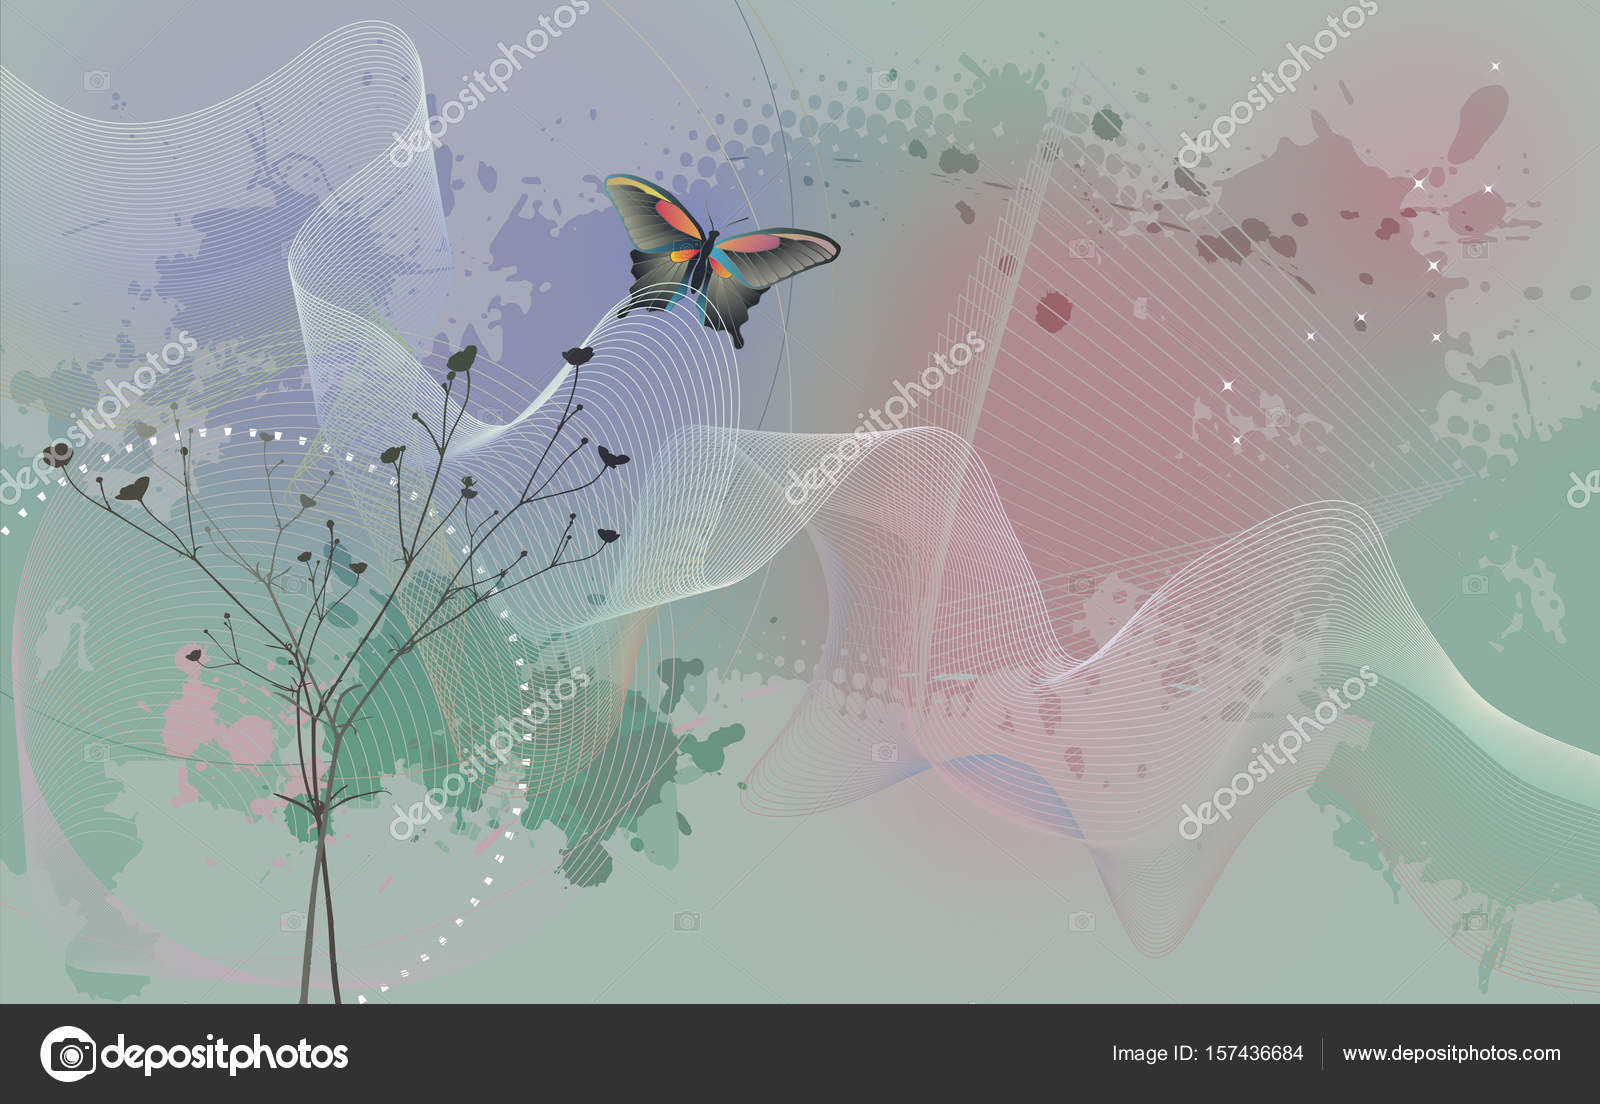 Wallpaper Schmetterling - Bee Eater - HD Wallpaper 